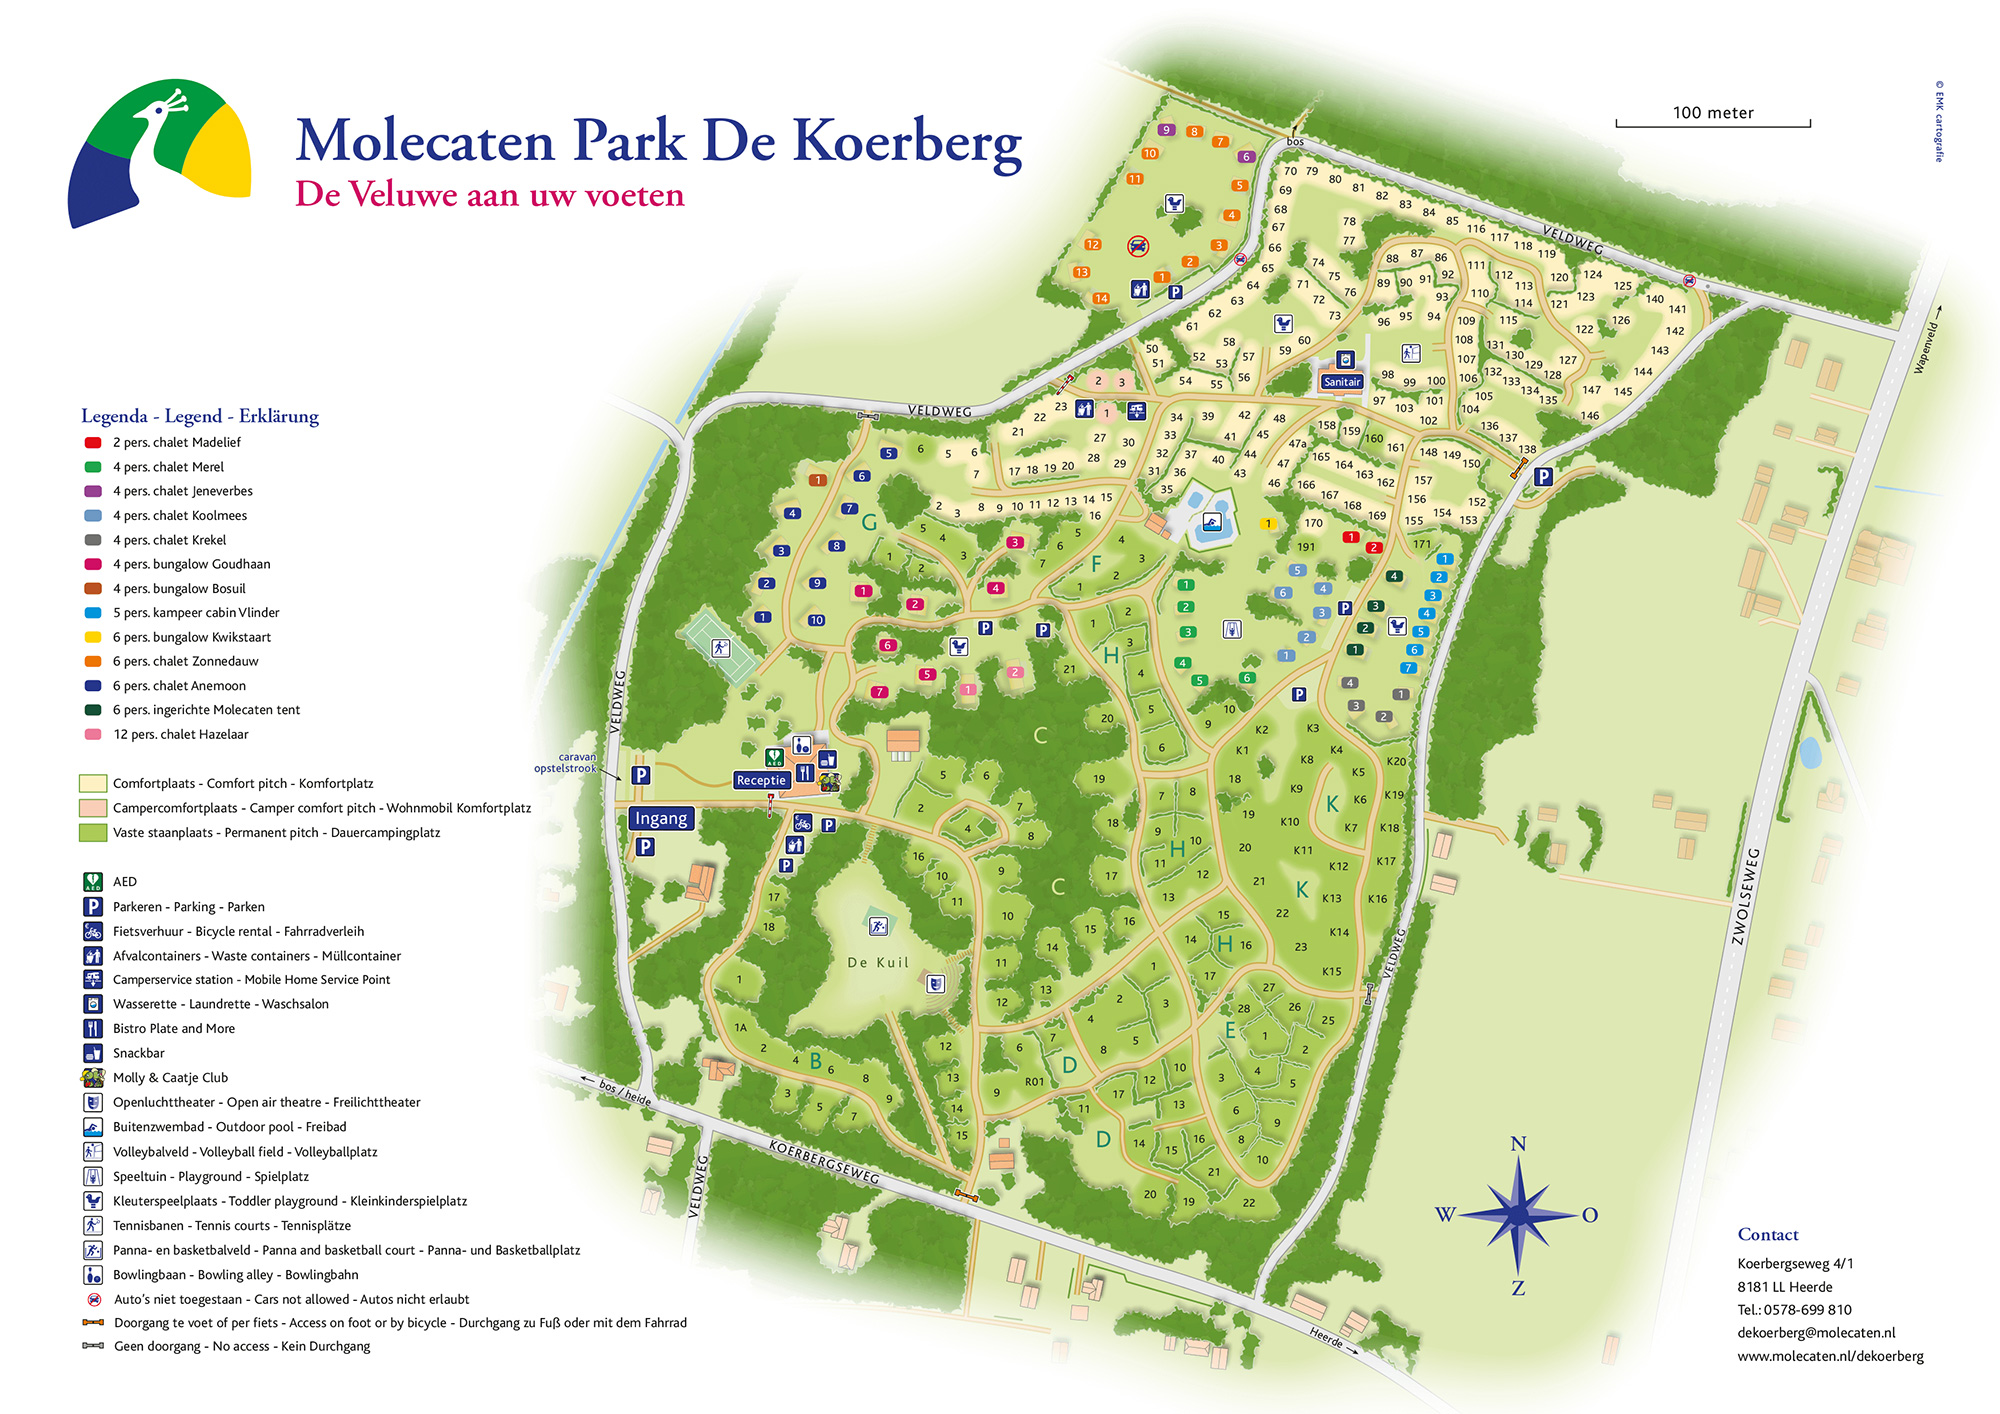 Molecaten Park De Koerberg